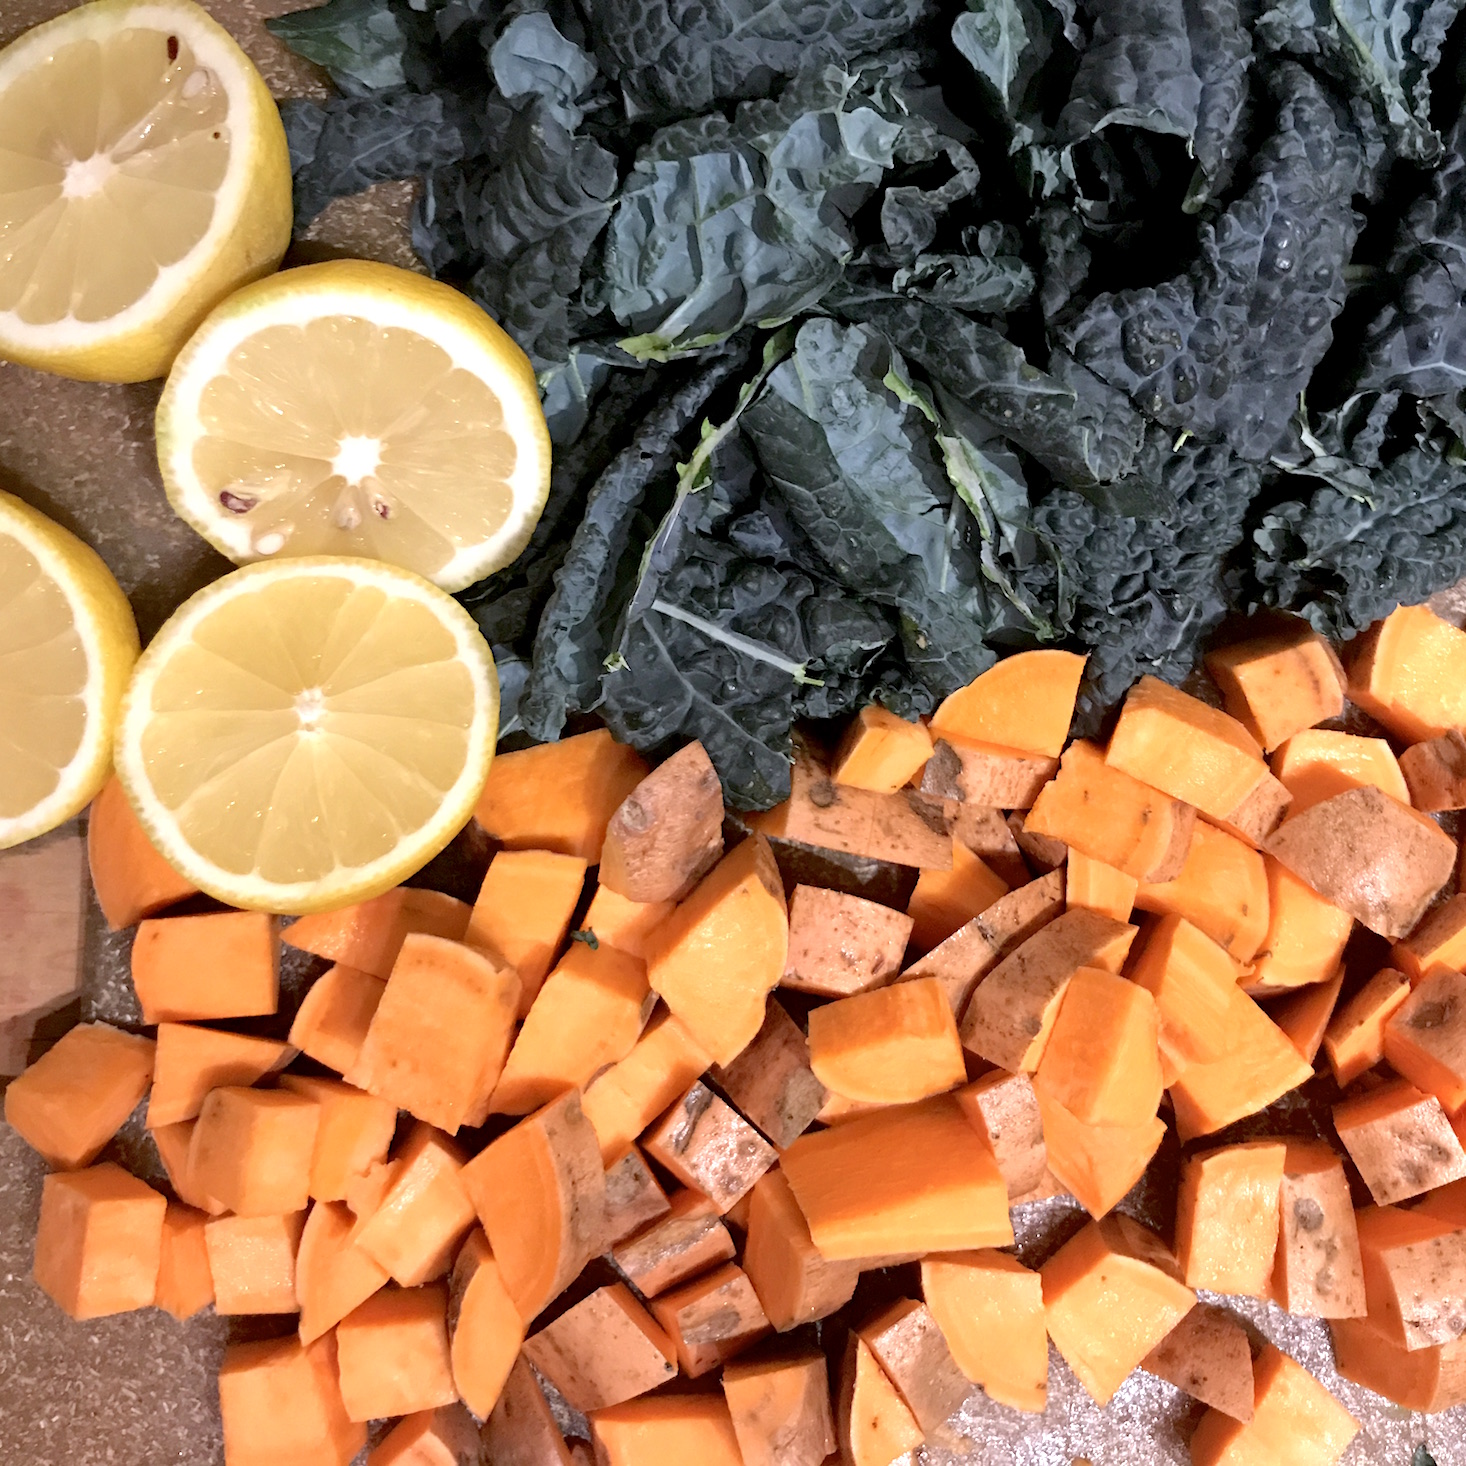 Plated February 2018 - chopped veggies